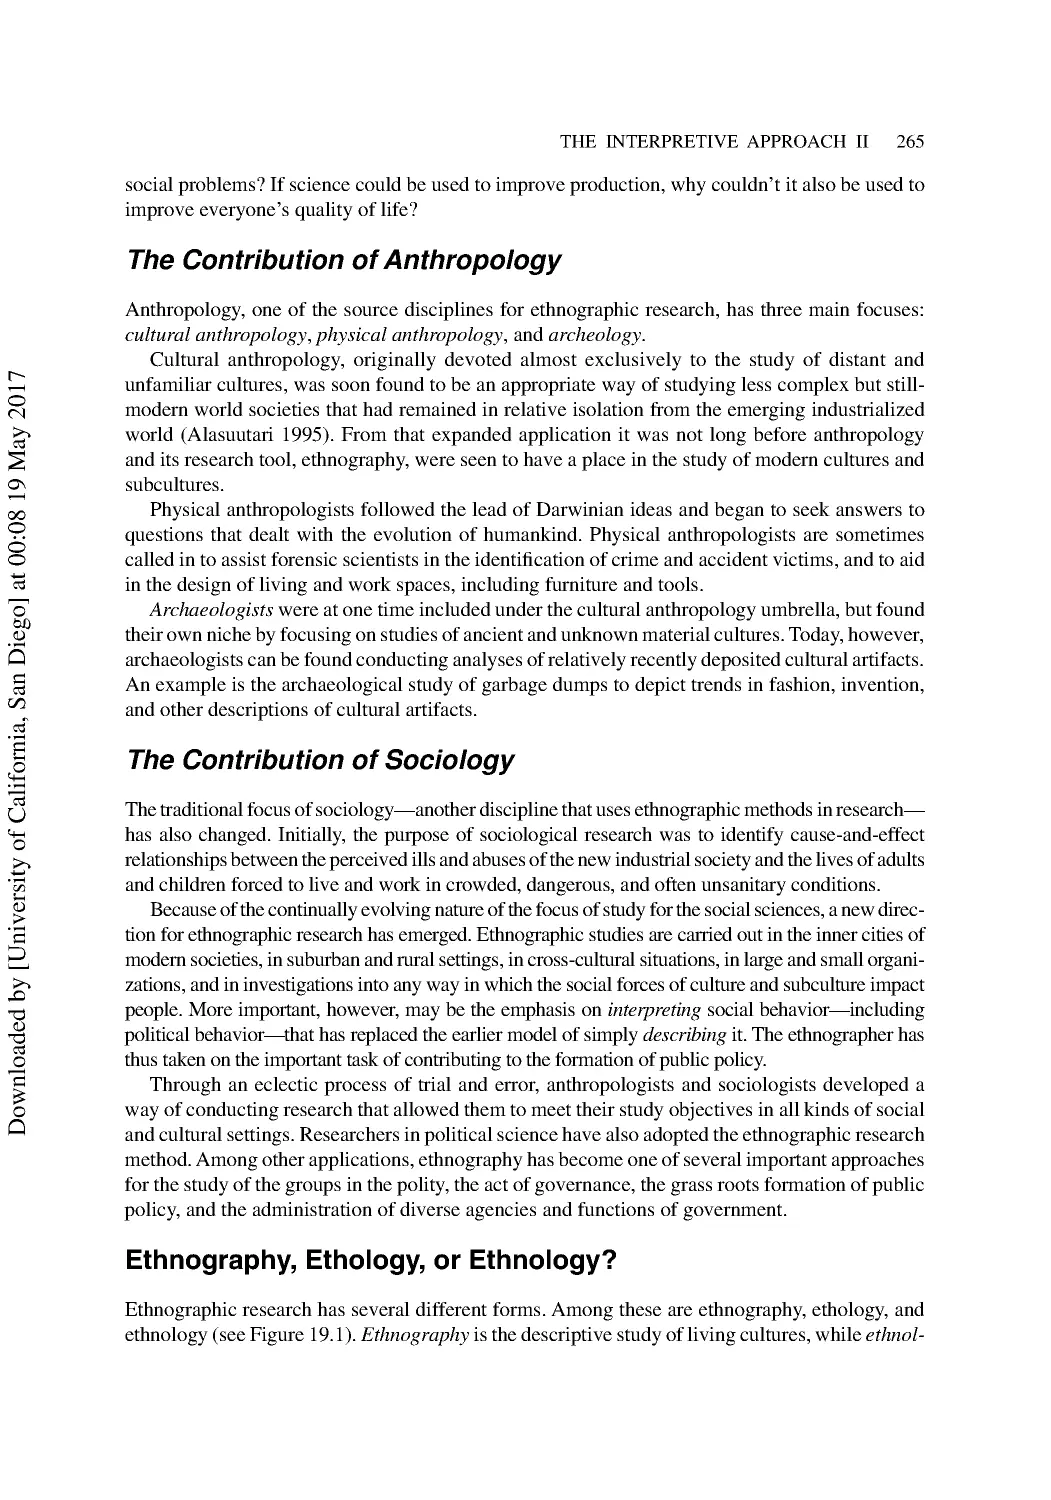 Ethnography, Ethology, or Ethnology?